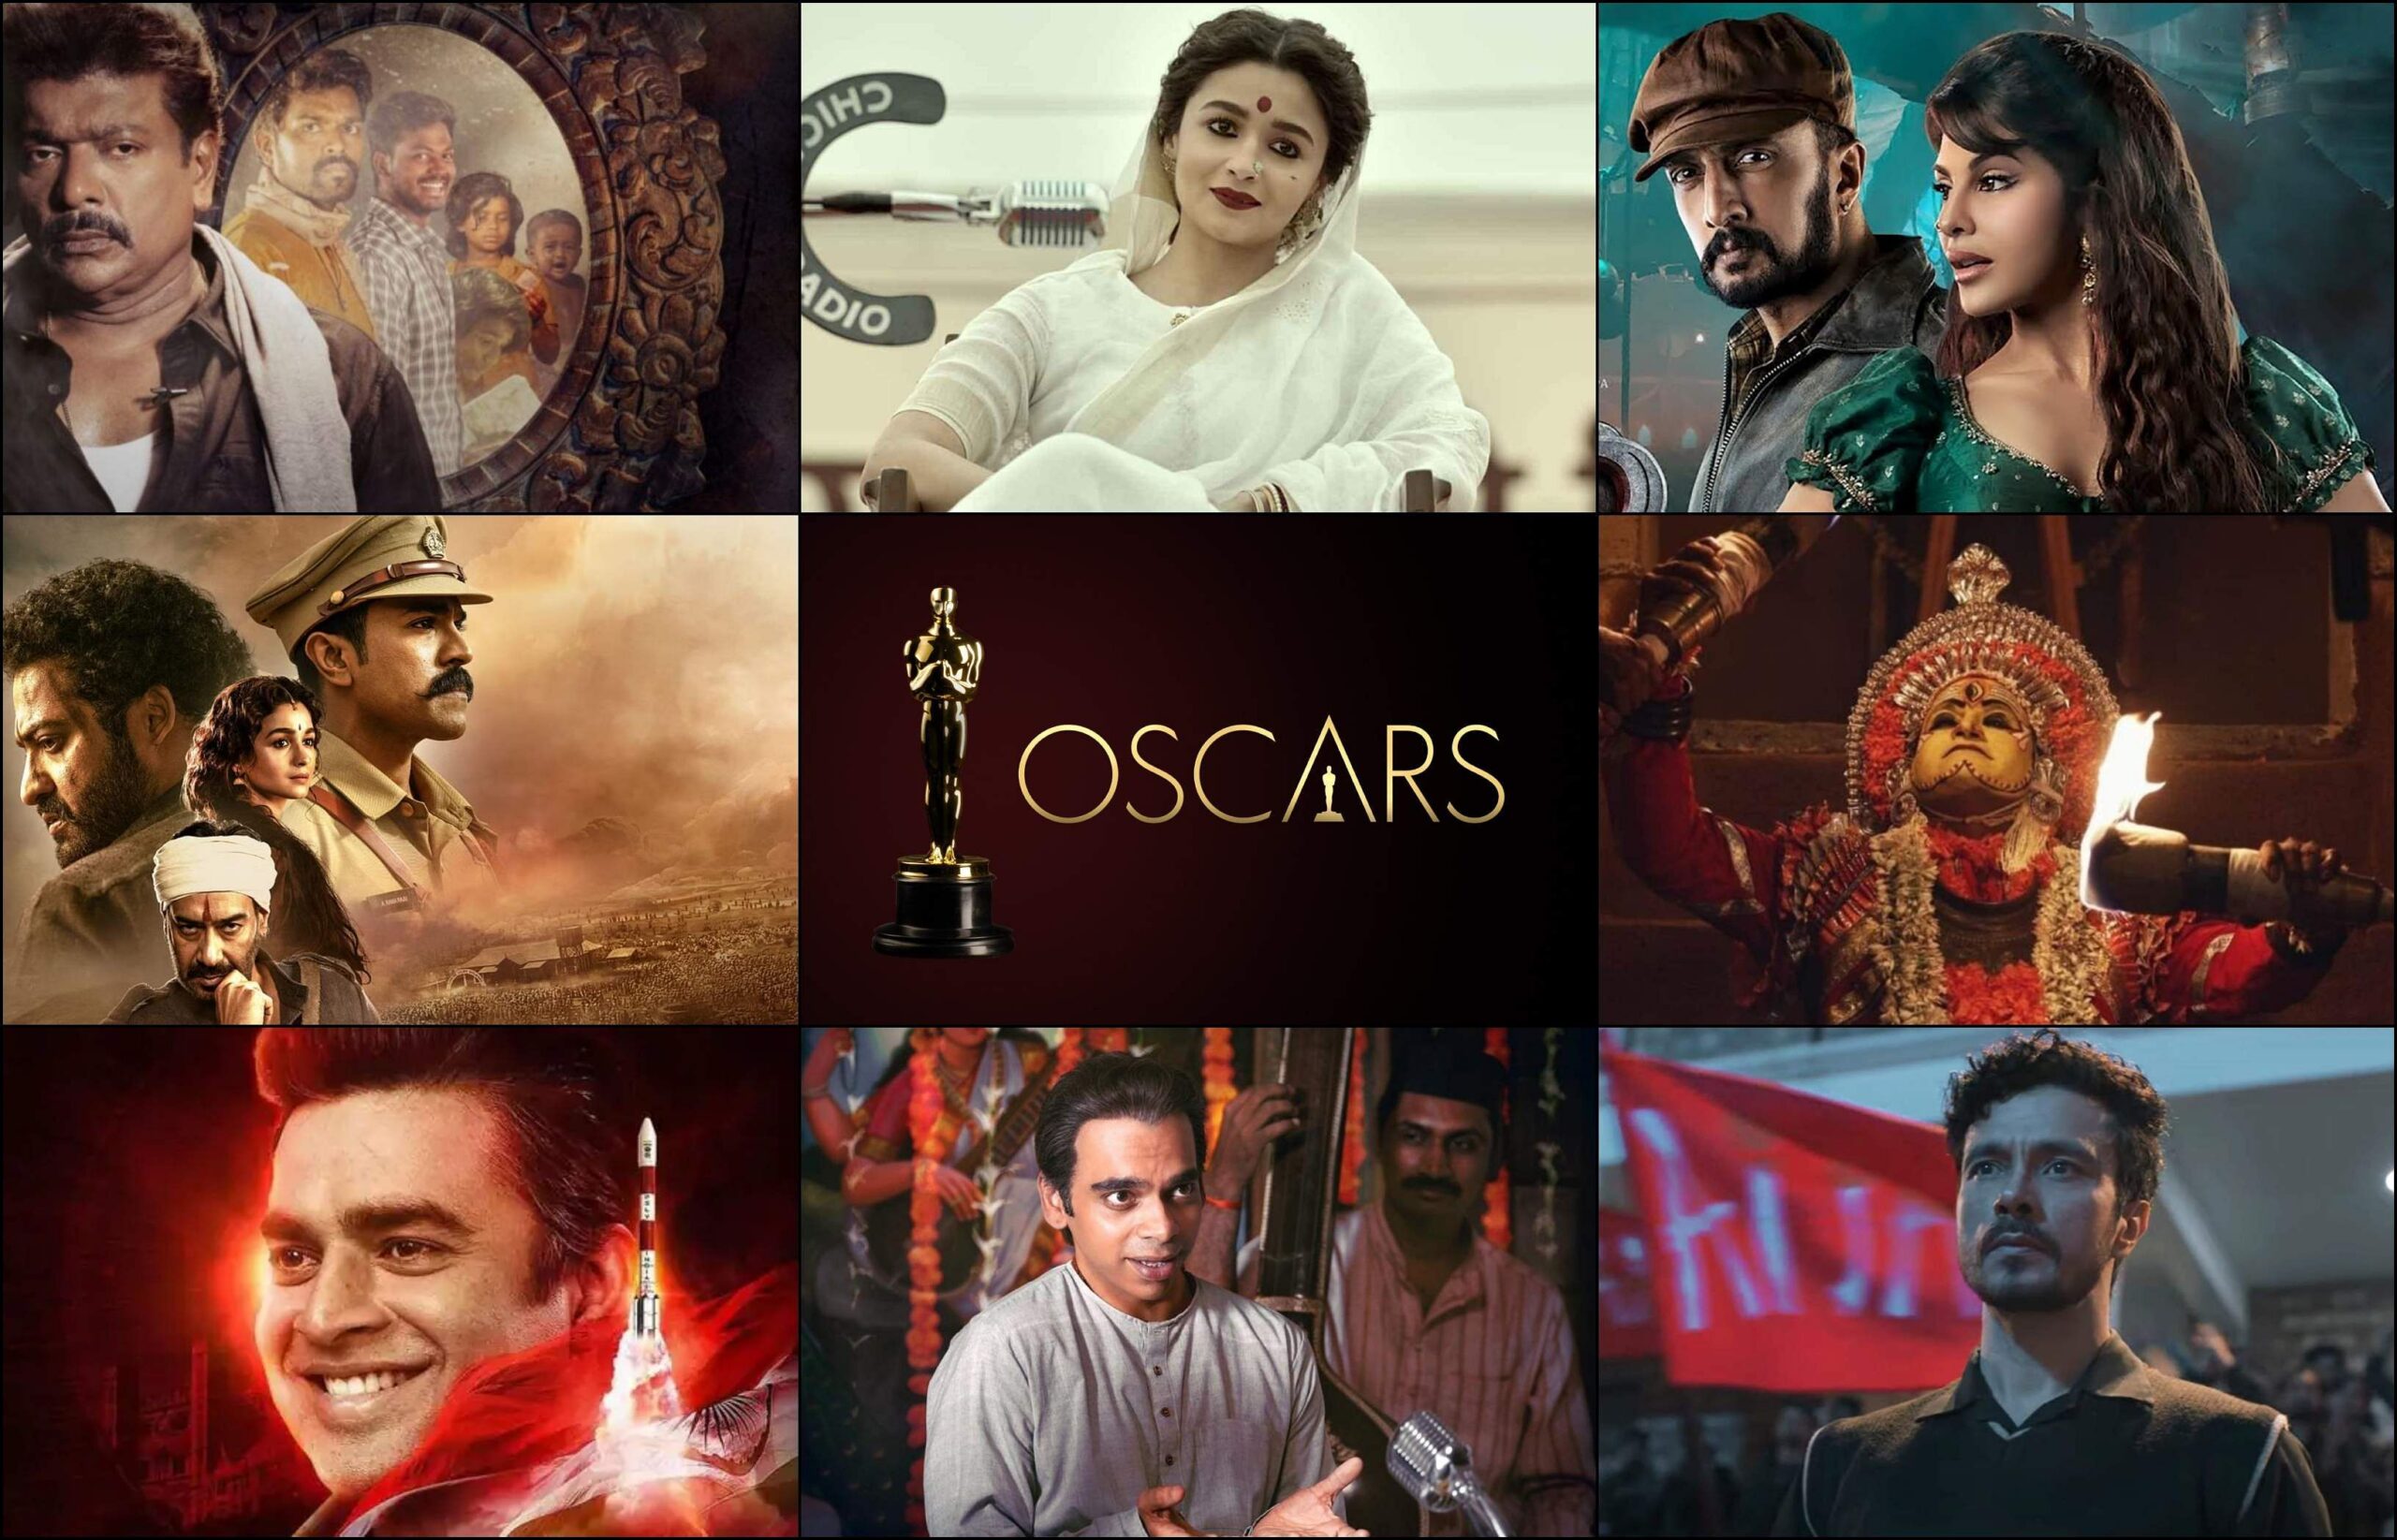 RRR, Kantara, Iravin Nizhal, Gangubai Kathiawadi among Indian films eligible for Oscars consideration